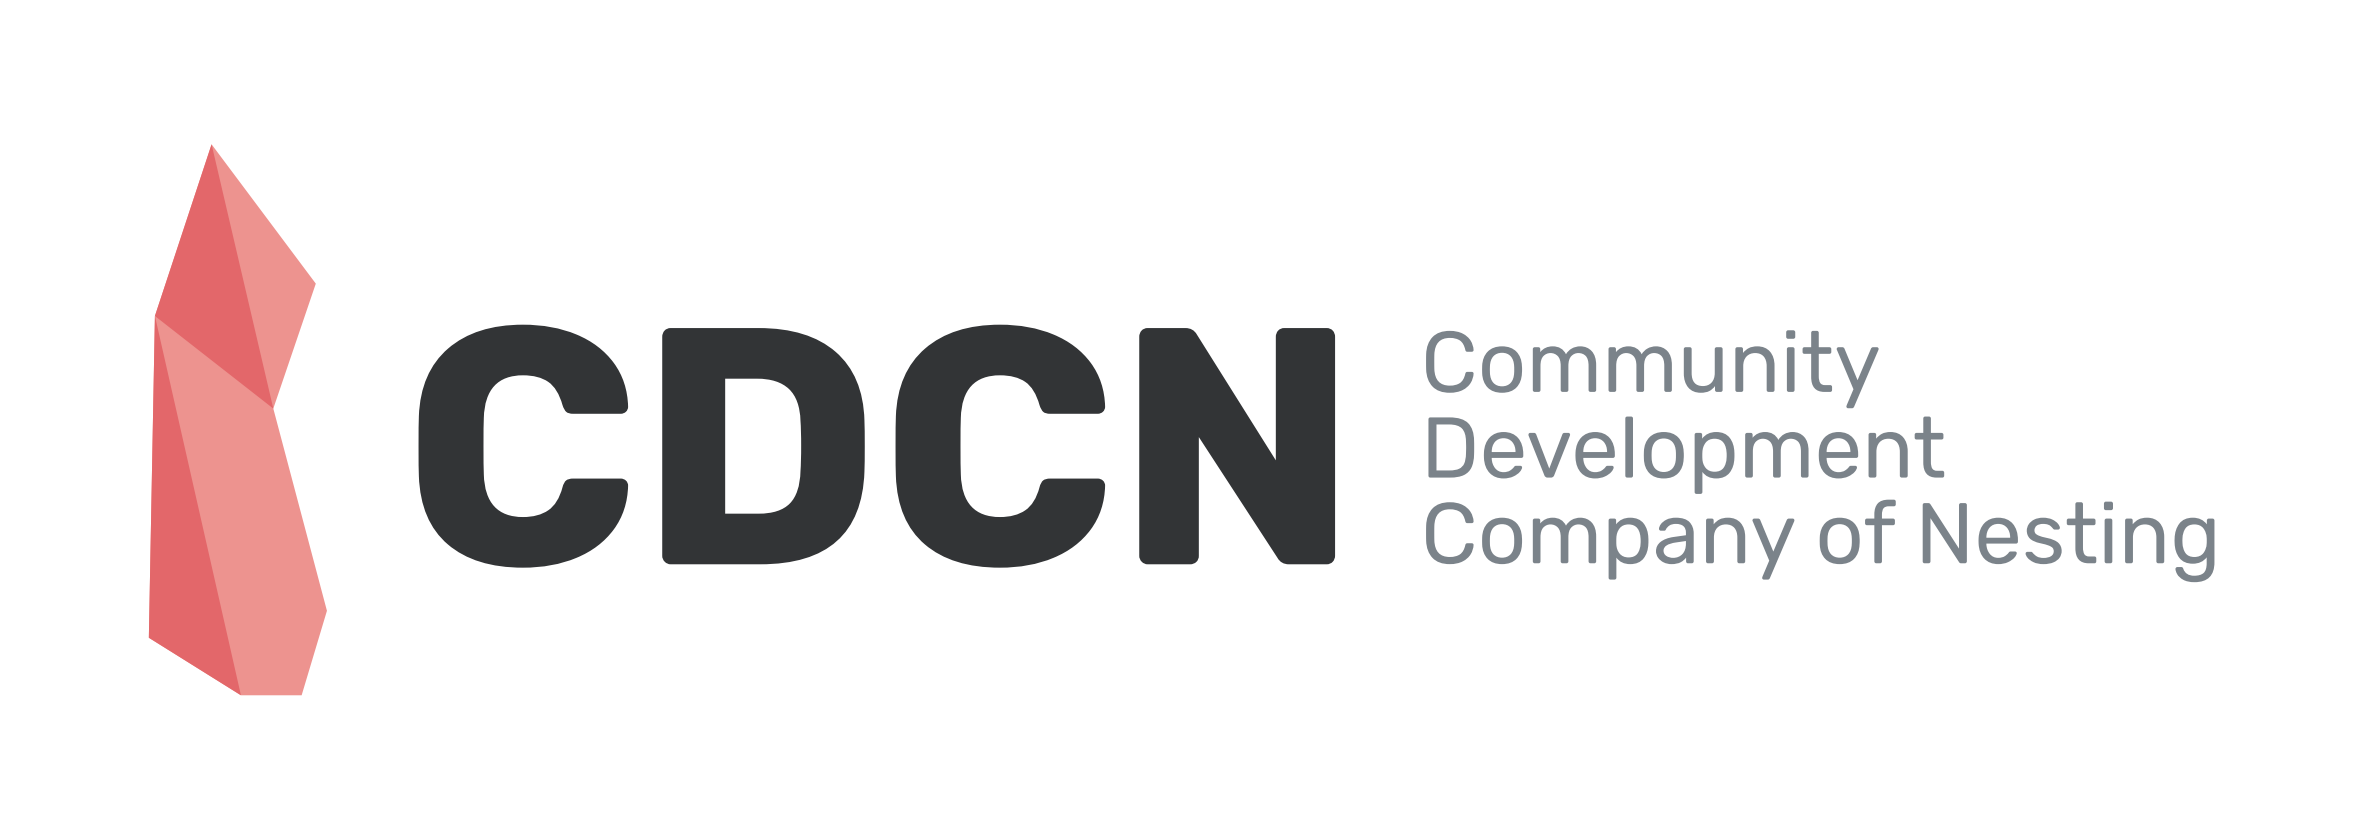 Community Development Company of Nesting Logo